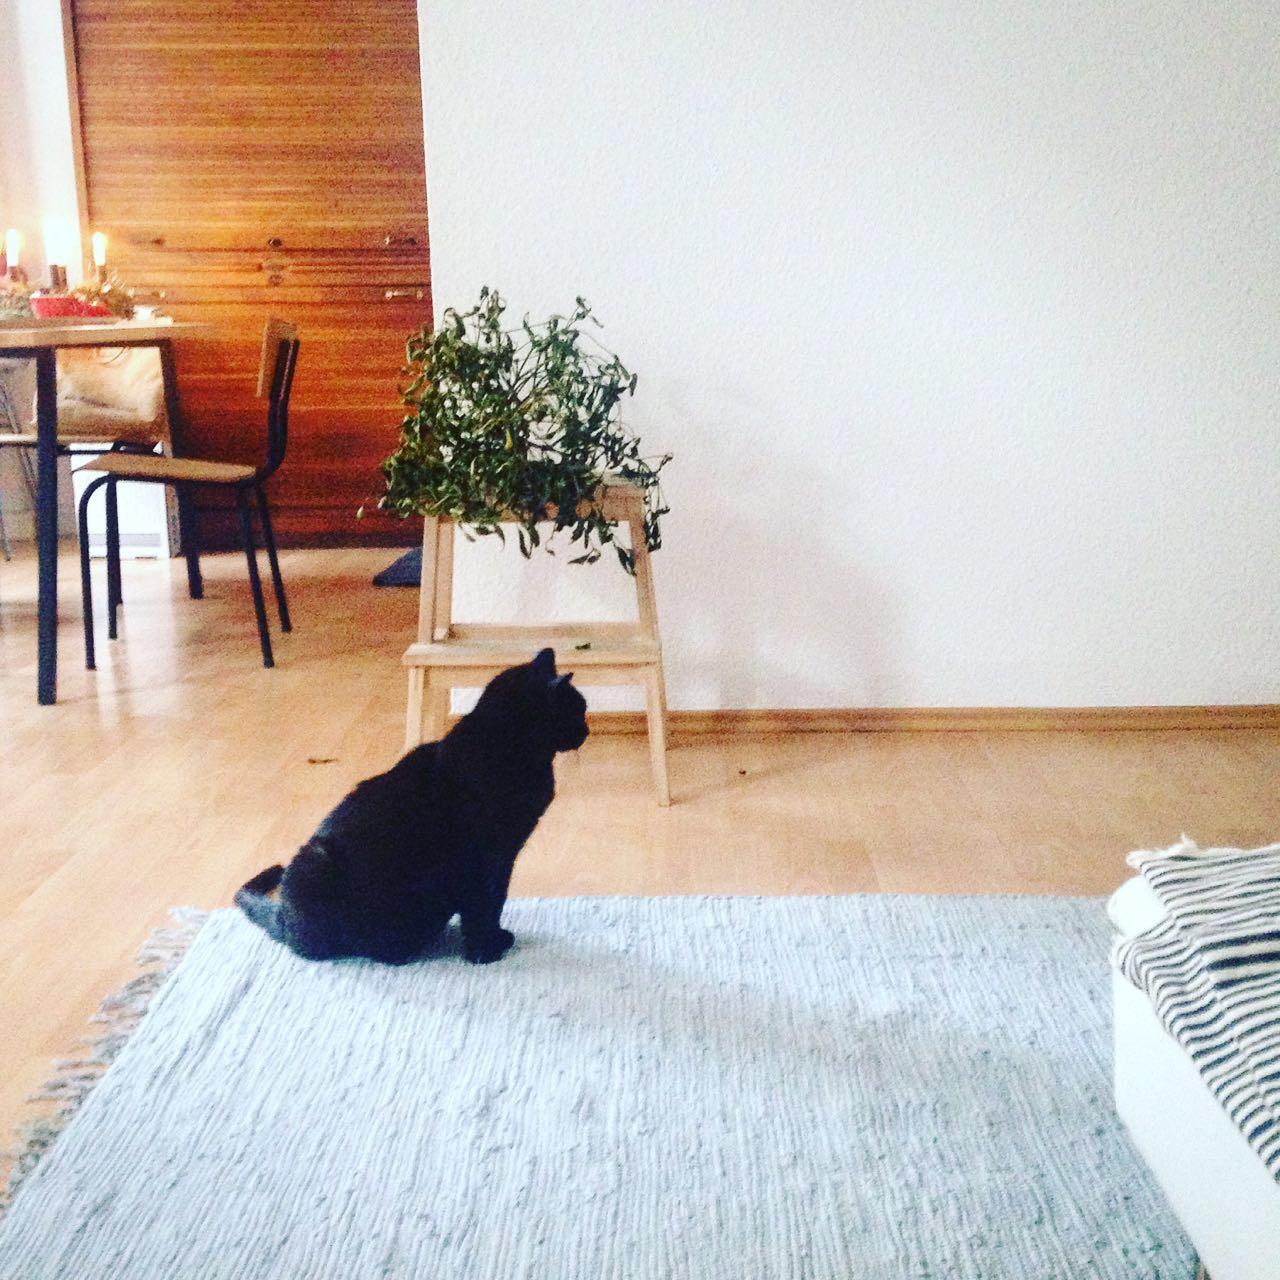 So eine Katze passt zu jeder Einrichtung ... #cat #minimalism #vintage #altbau